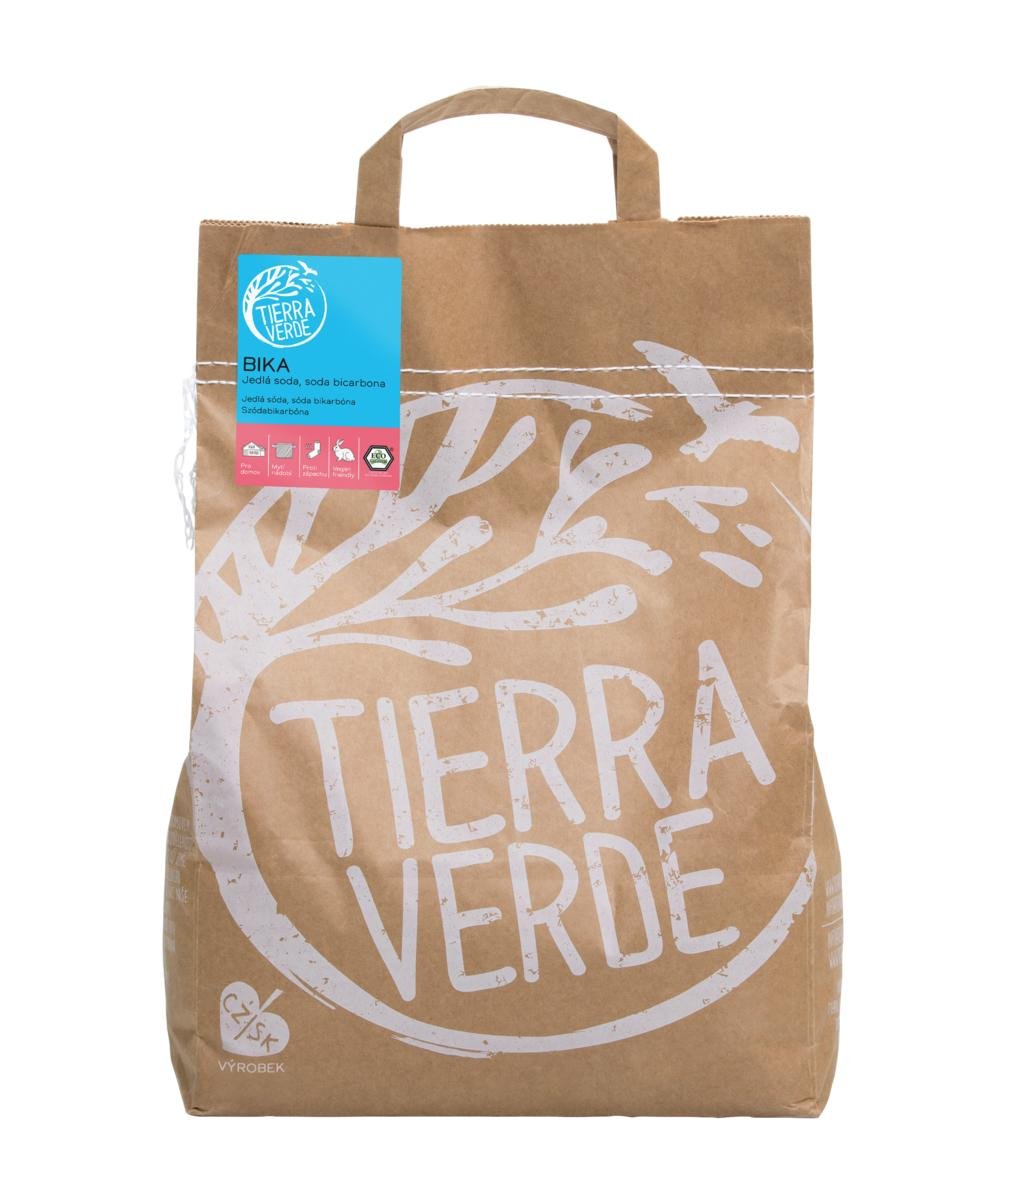 Tierra Verde BIKA – Jedlá soda (Bikarbona) 5 kg pytel